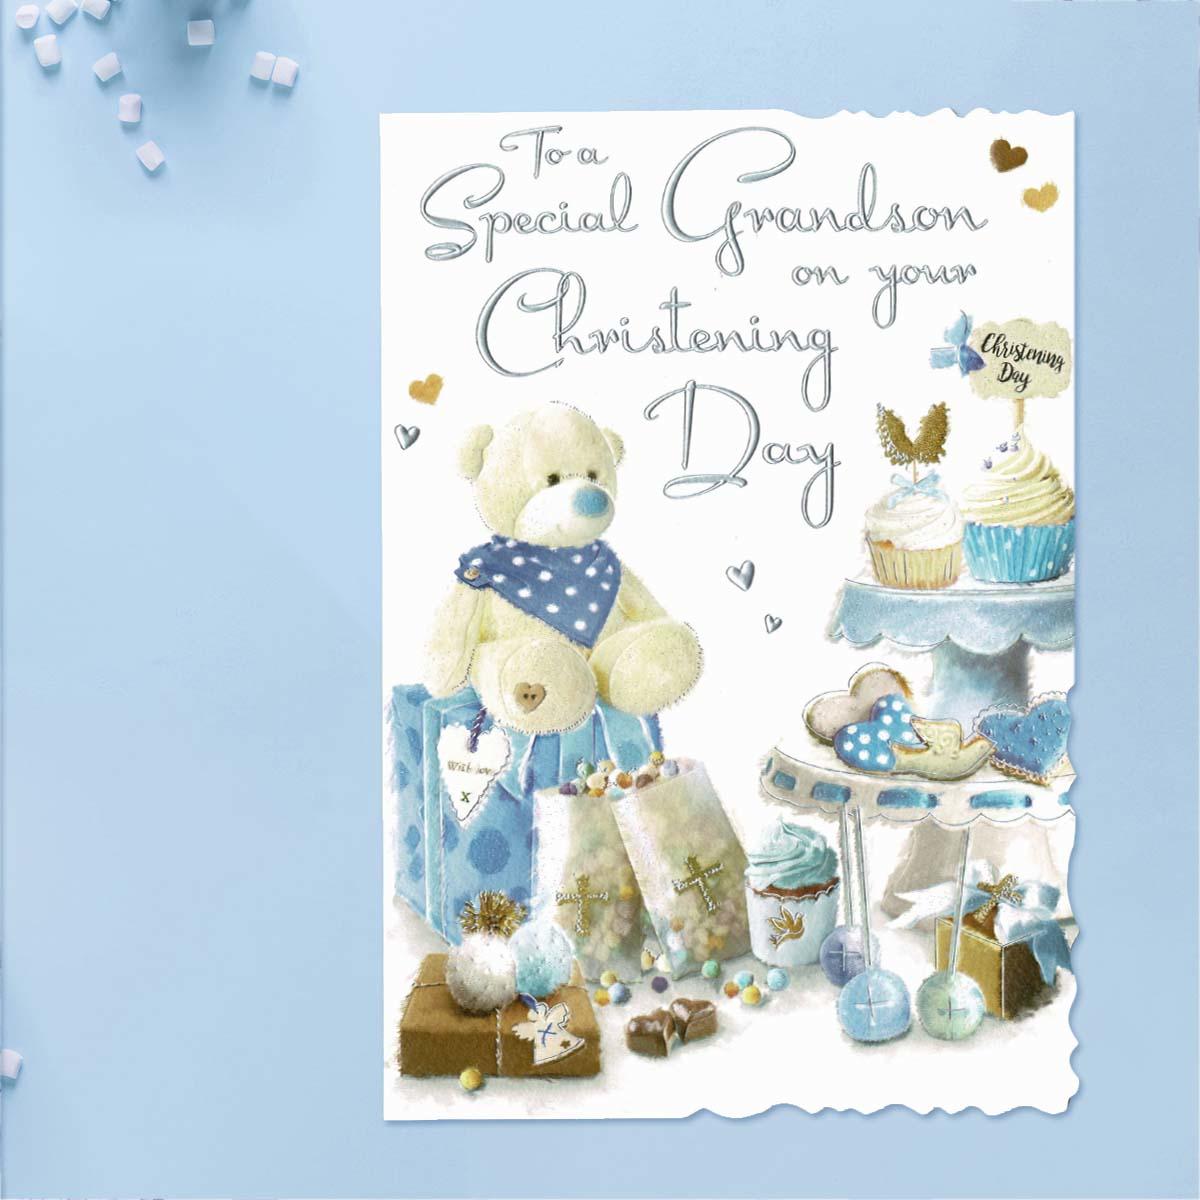 Velvet - Grandson Christening Day Card Front Image